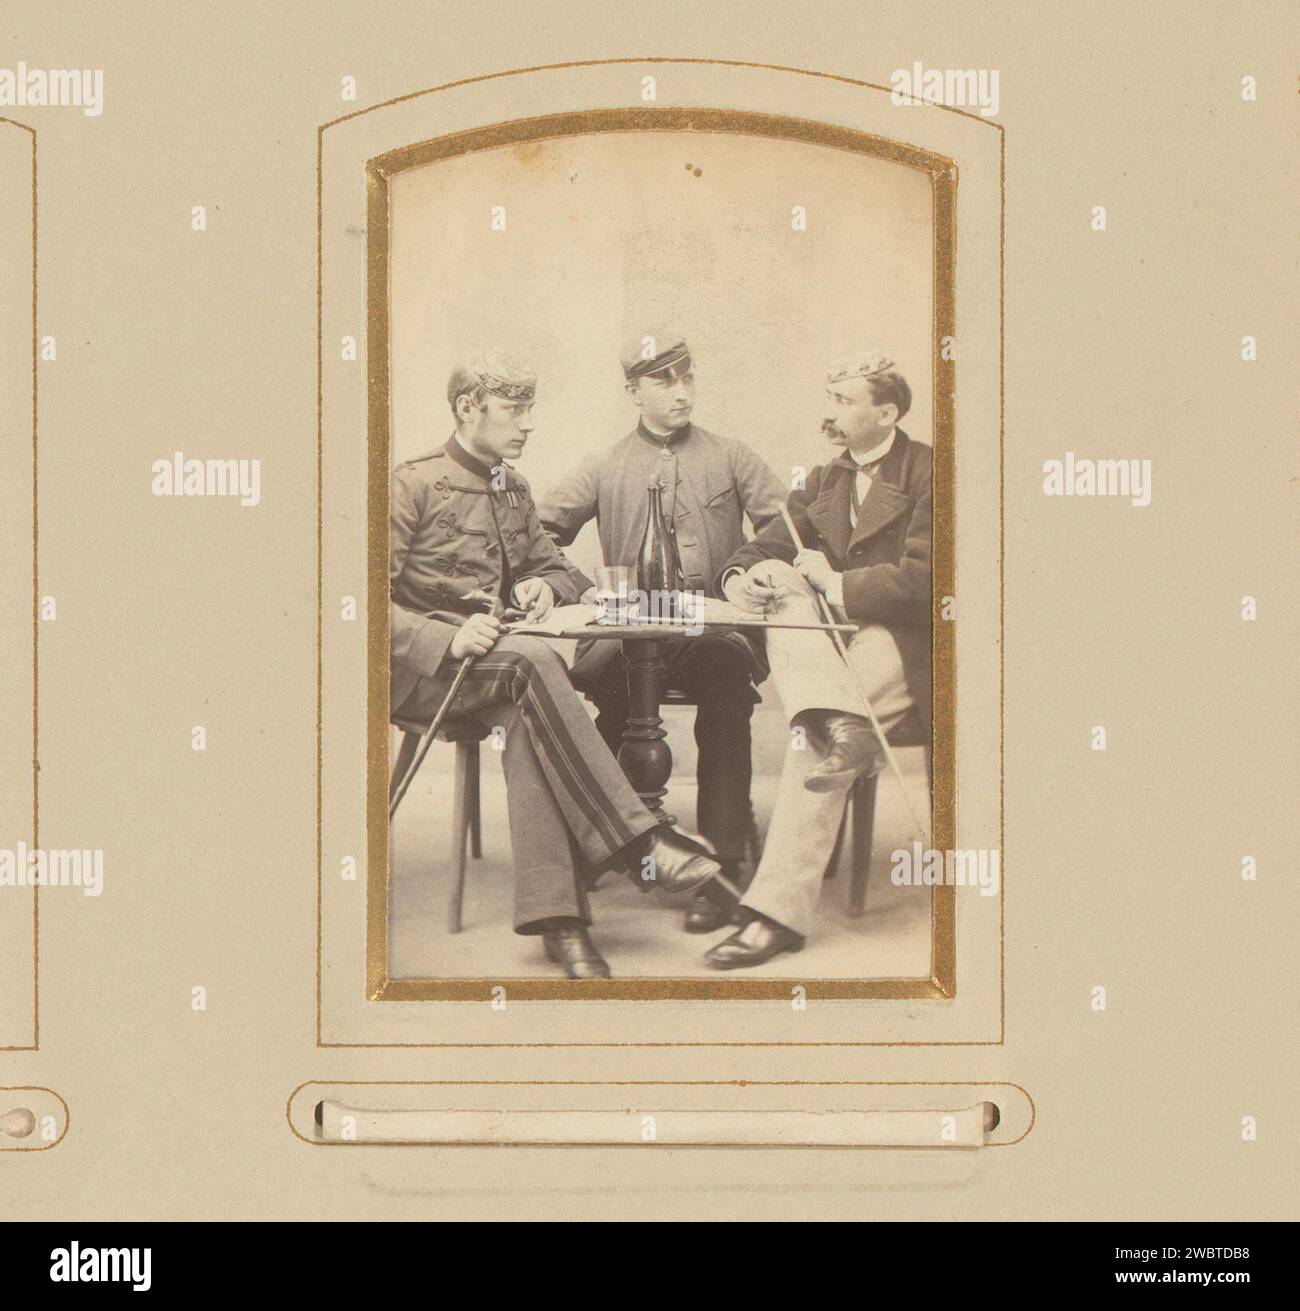 Portrait de trois hommes à une table, J. Remde, 1850 - 1880 Photographie. Carte de visite cette photo fait partie d'un album. Carton Ironach. support photographique albumen print personnes historiques anonymes dépeintes dans un groupe, dans un portrait de groupe. homme adulte (+ trois personnes). tableau Banque D'Images